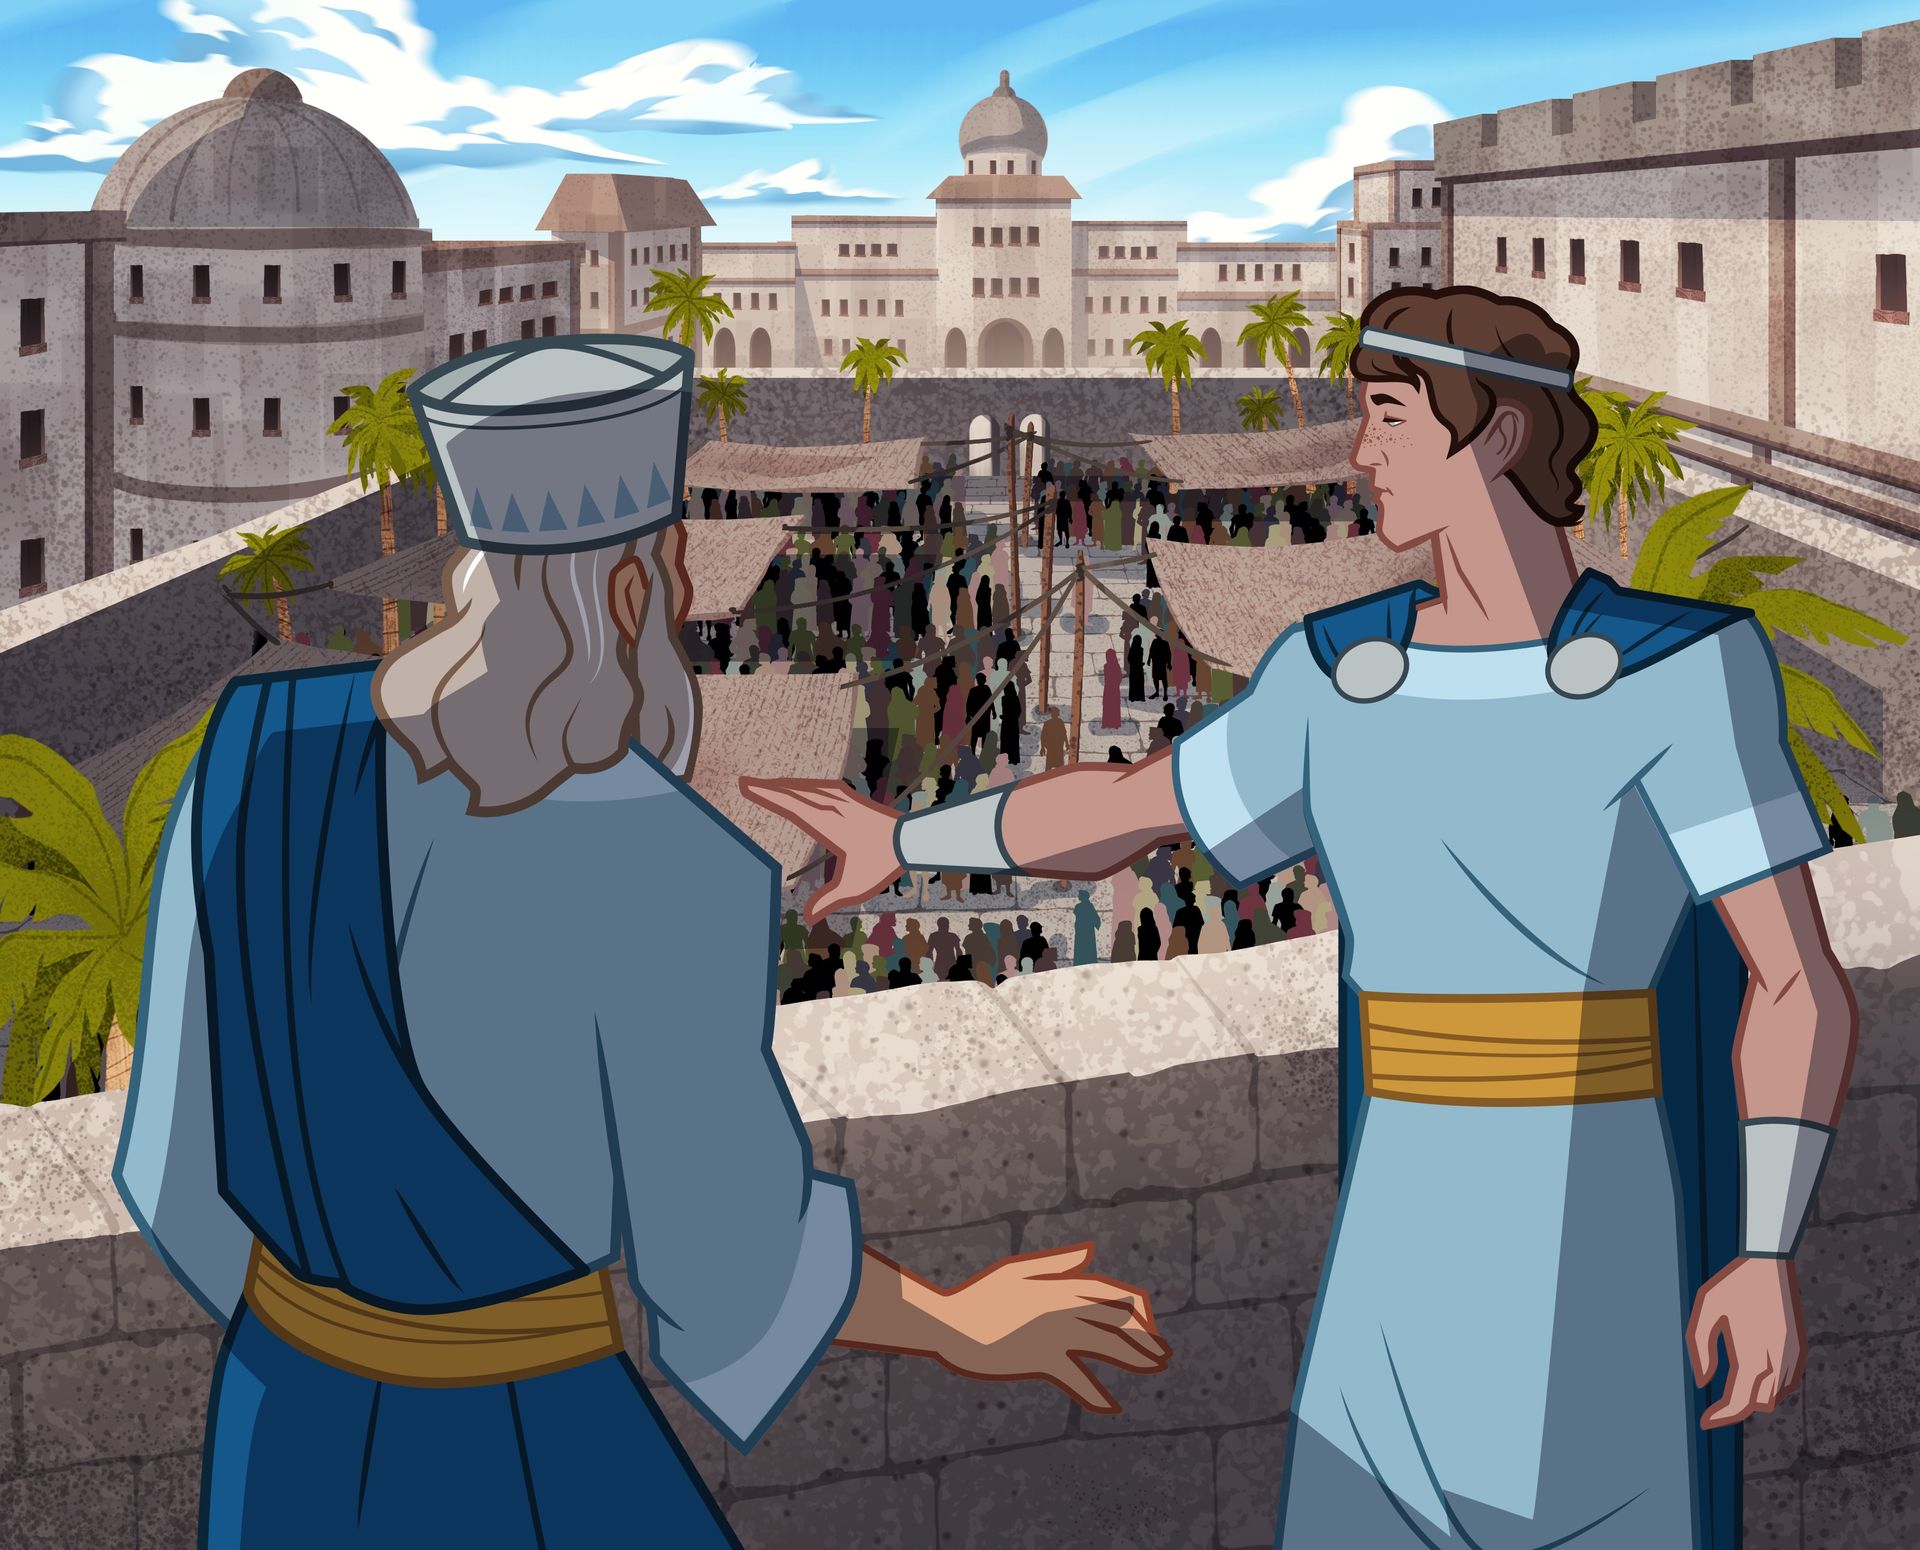 Gravura do rei Saul e Davi olhando a cidade. 
1 Samuel 18:5